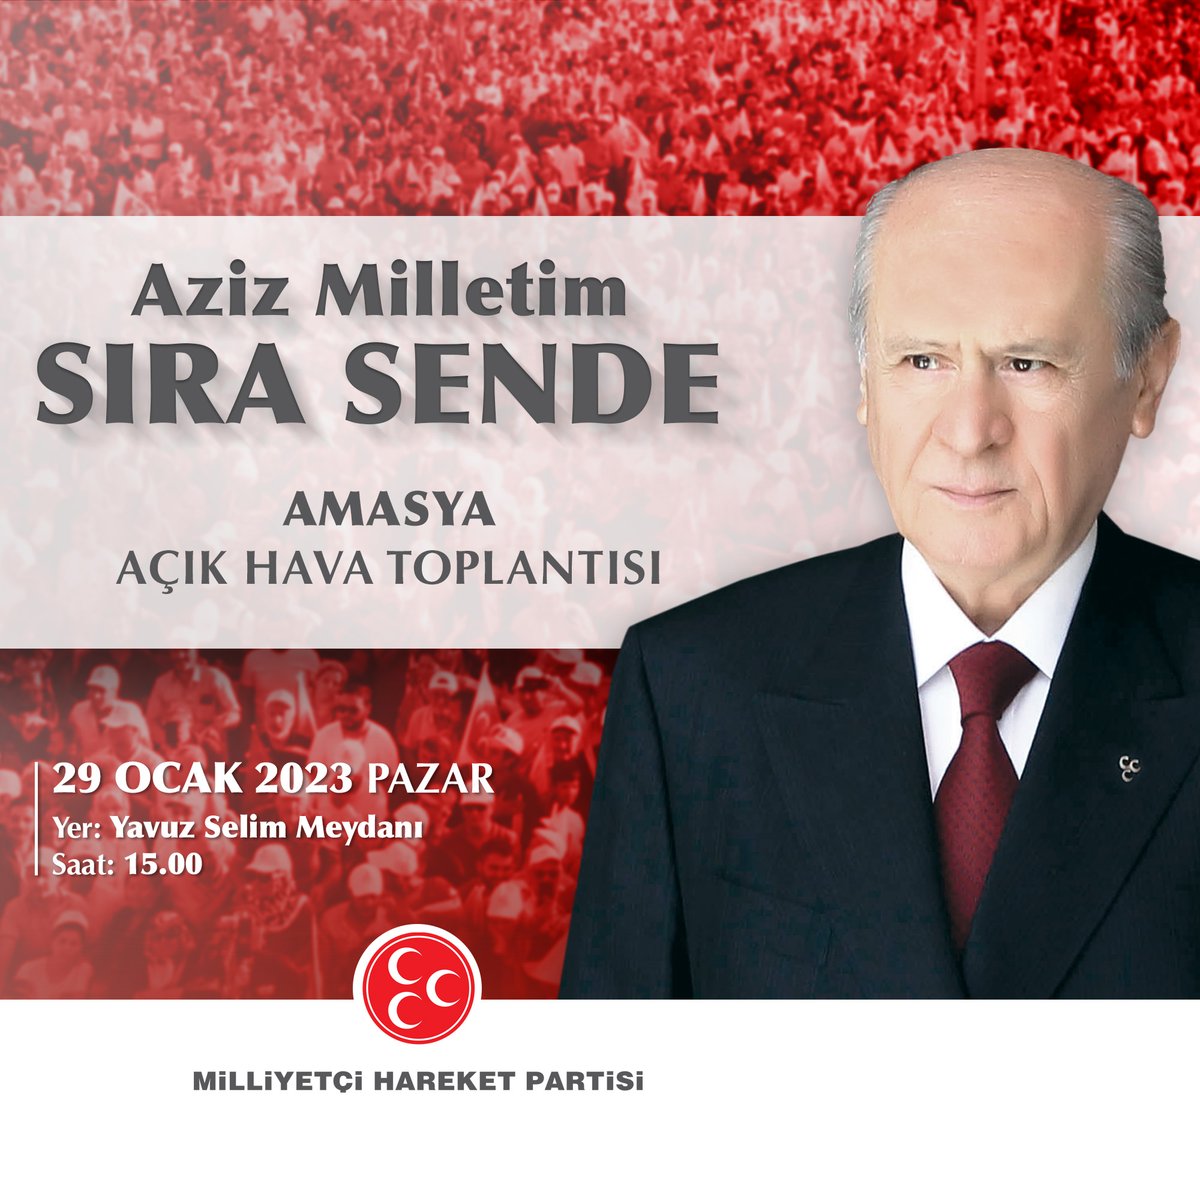 AzizMilletim SıraSende Amasya Açık Hava Toplantısı 29 Ocak 2023 Pazar Saat: 15.00'te Yavuz Selim Meydanı'nda